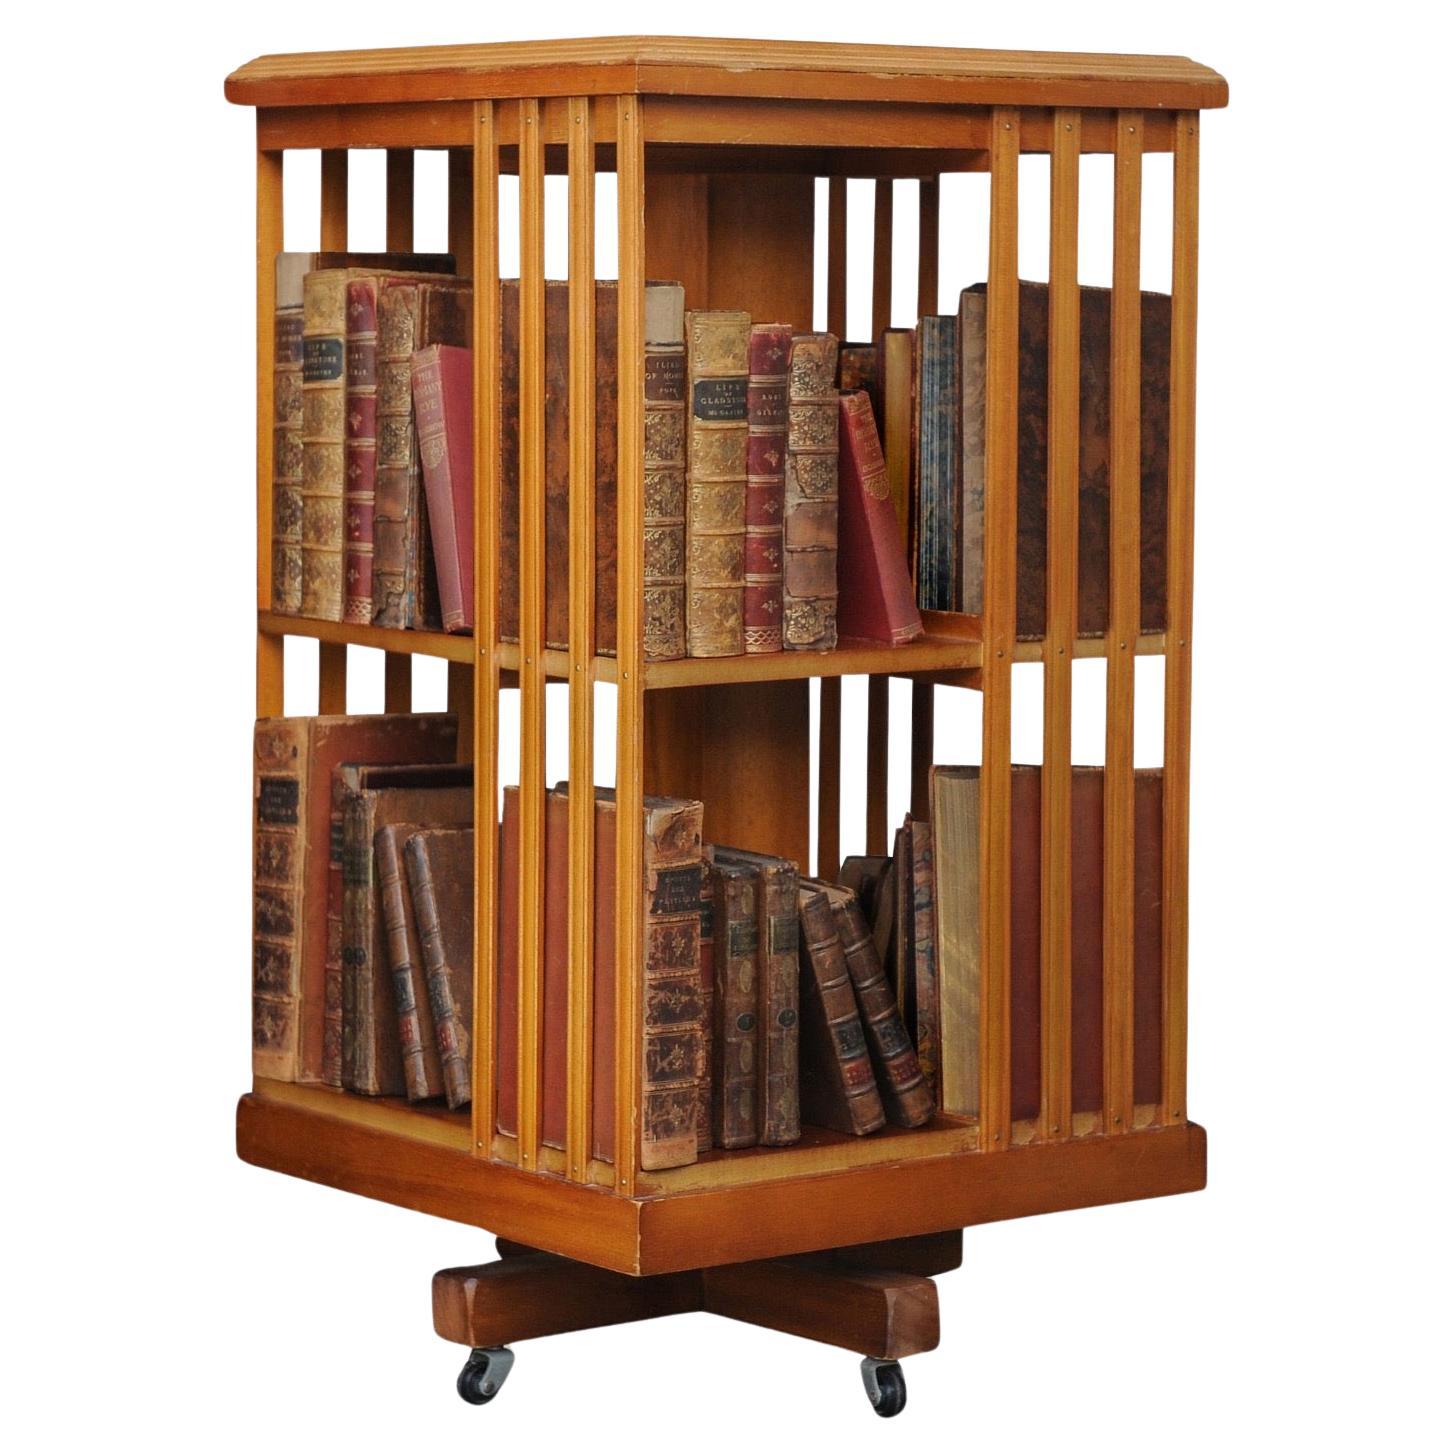 Bibliothèque sectionnelle tournante à deux niveaux sur roulettes de style Regency Revive